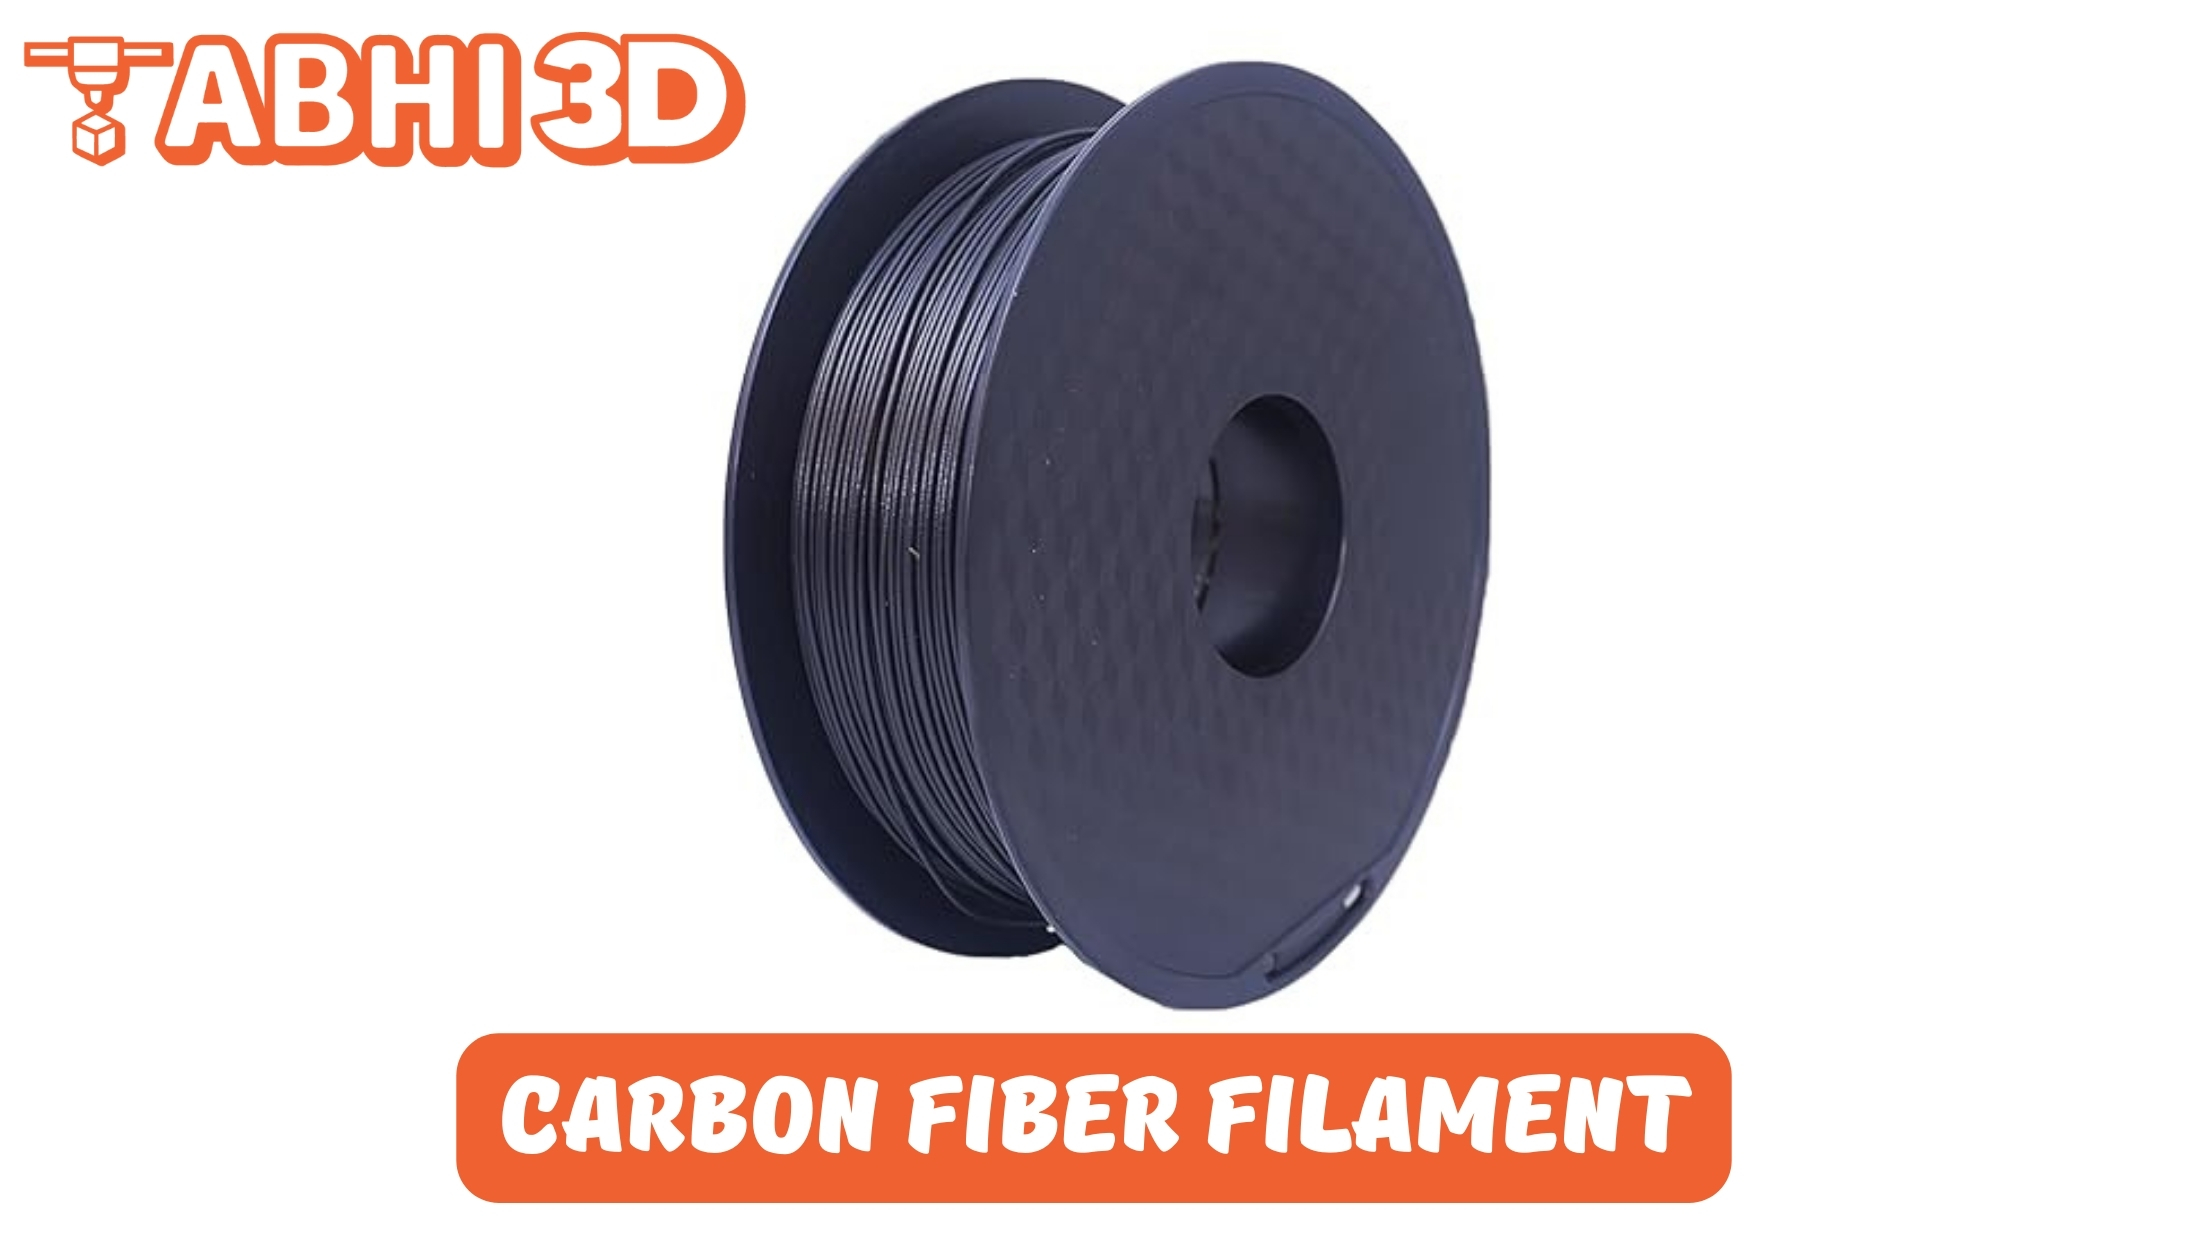 Carbon Fiber Filament for 3D Printing